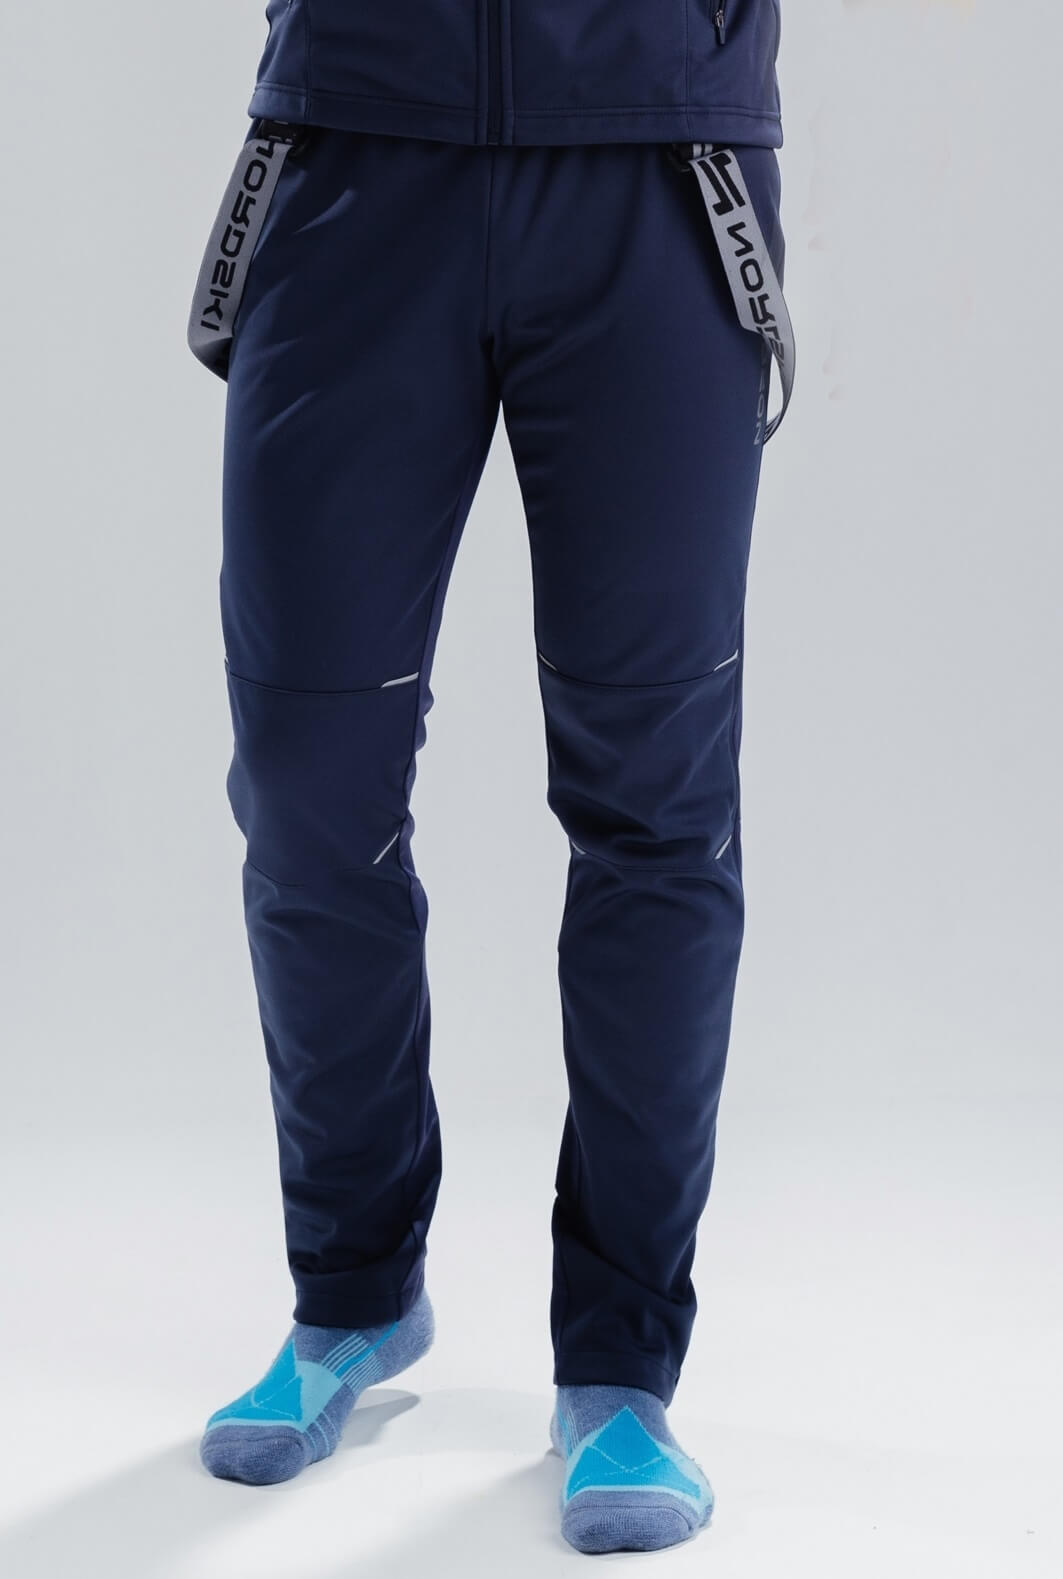 Мужские разминочные лыжные штаны-самосбросы Nordski Premium NSM305021